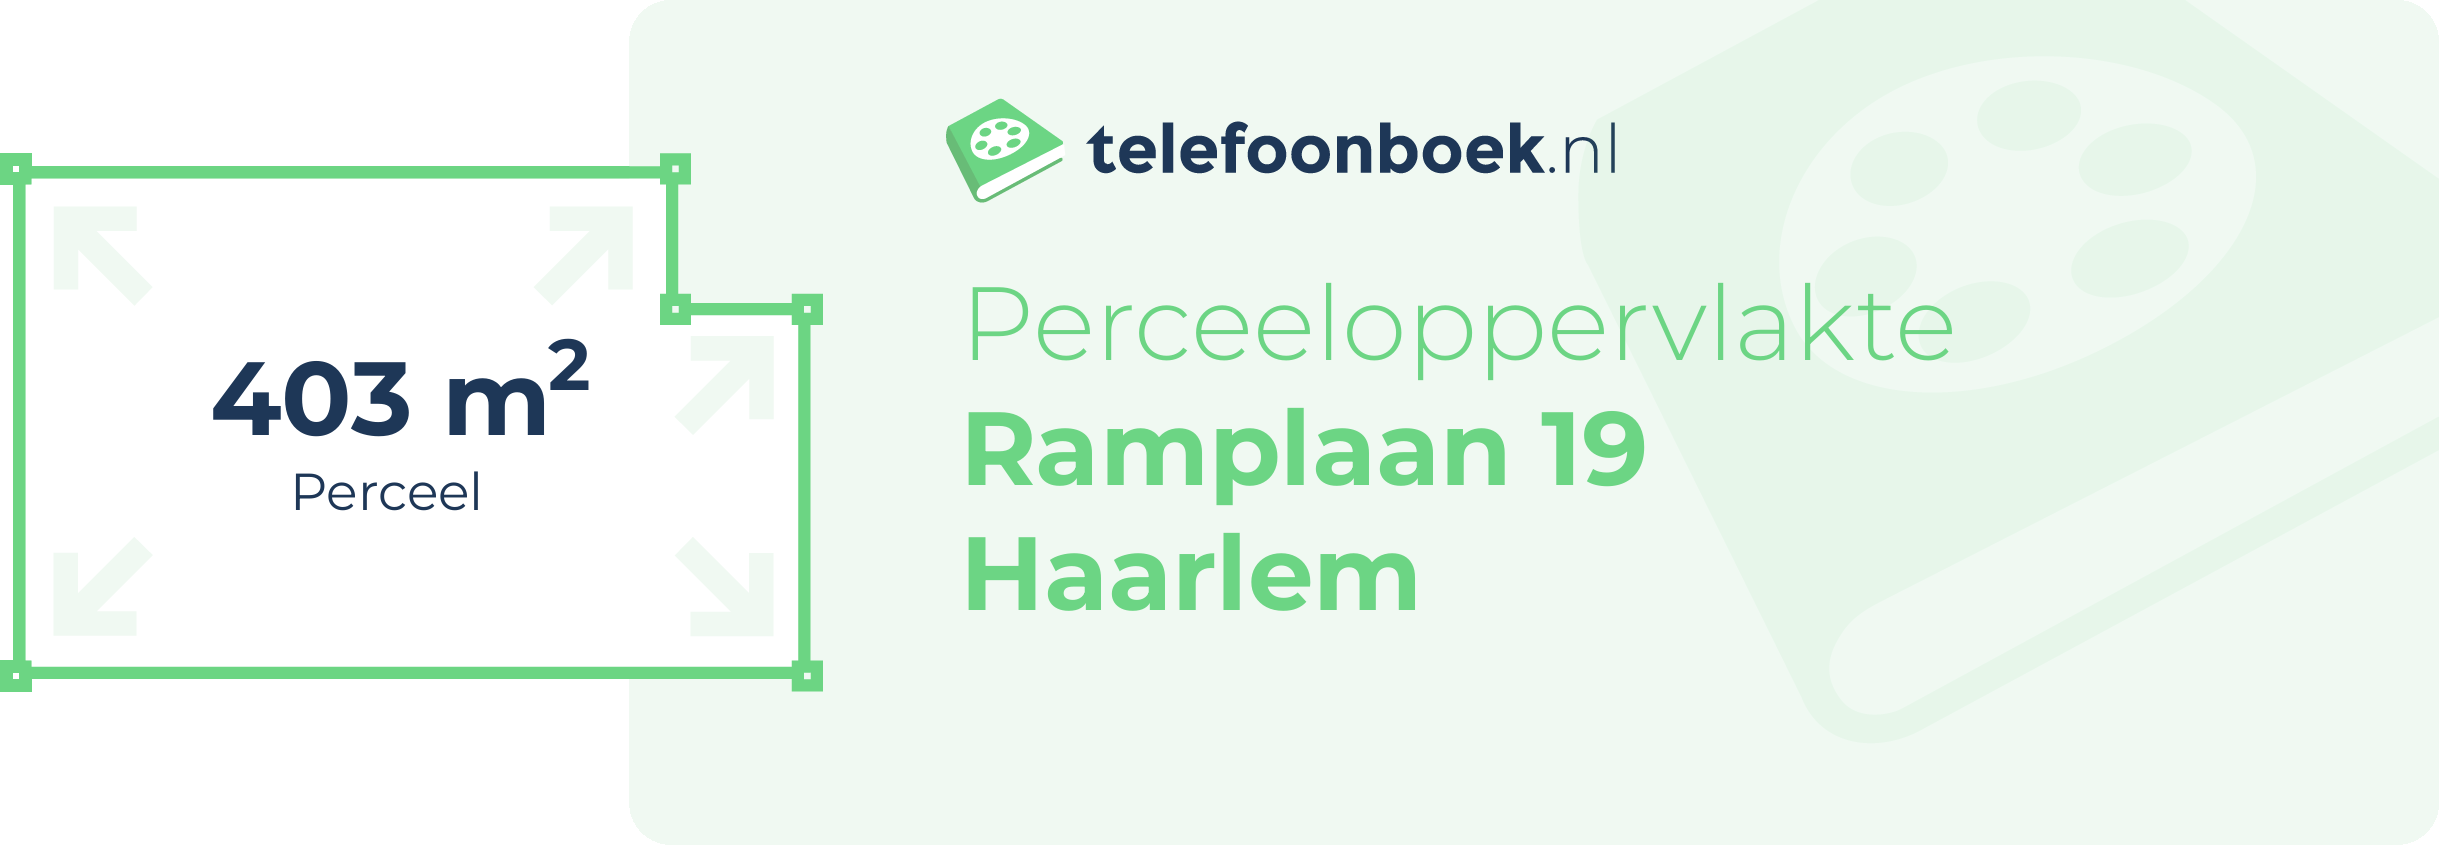 Perceeloppervlakte Ramplaan 19 Haarlem